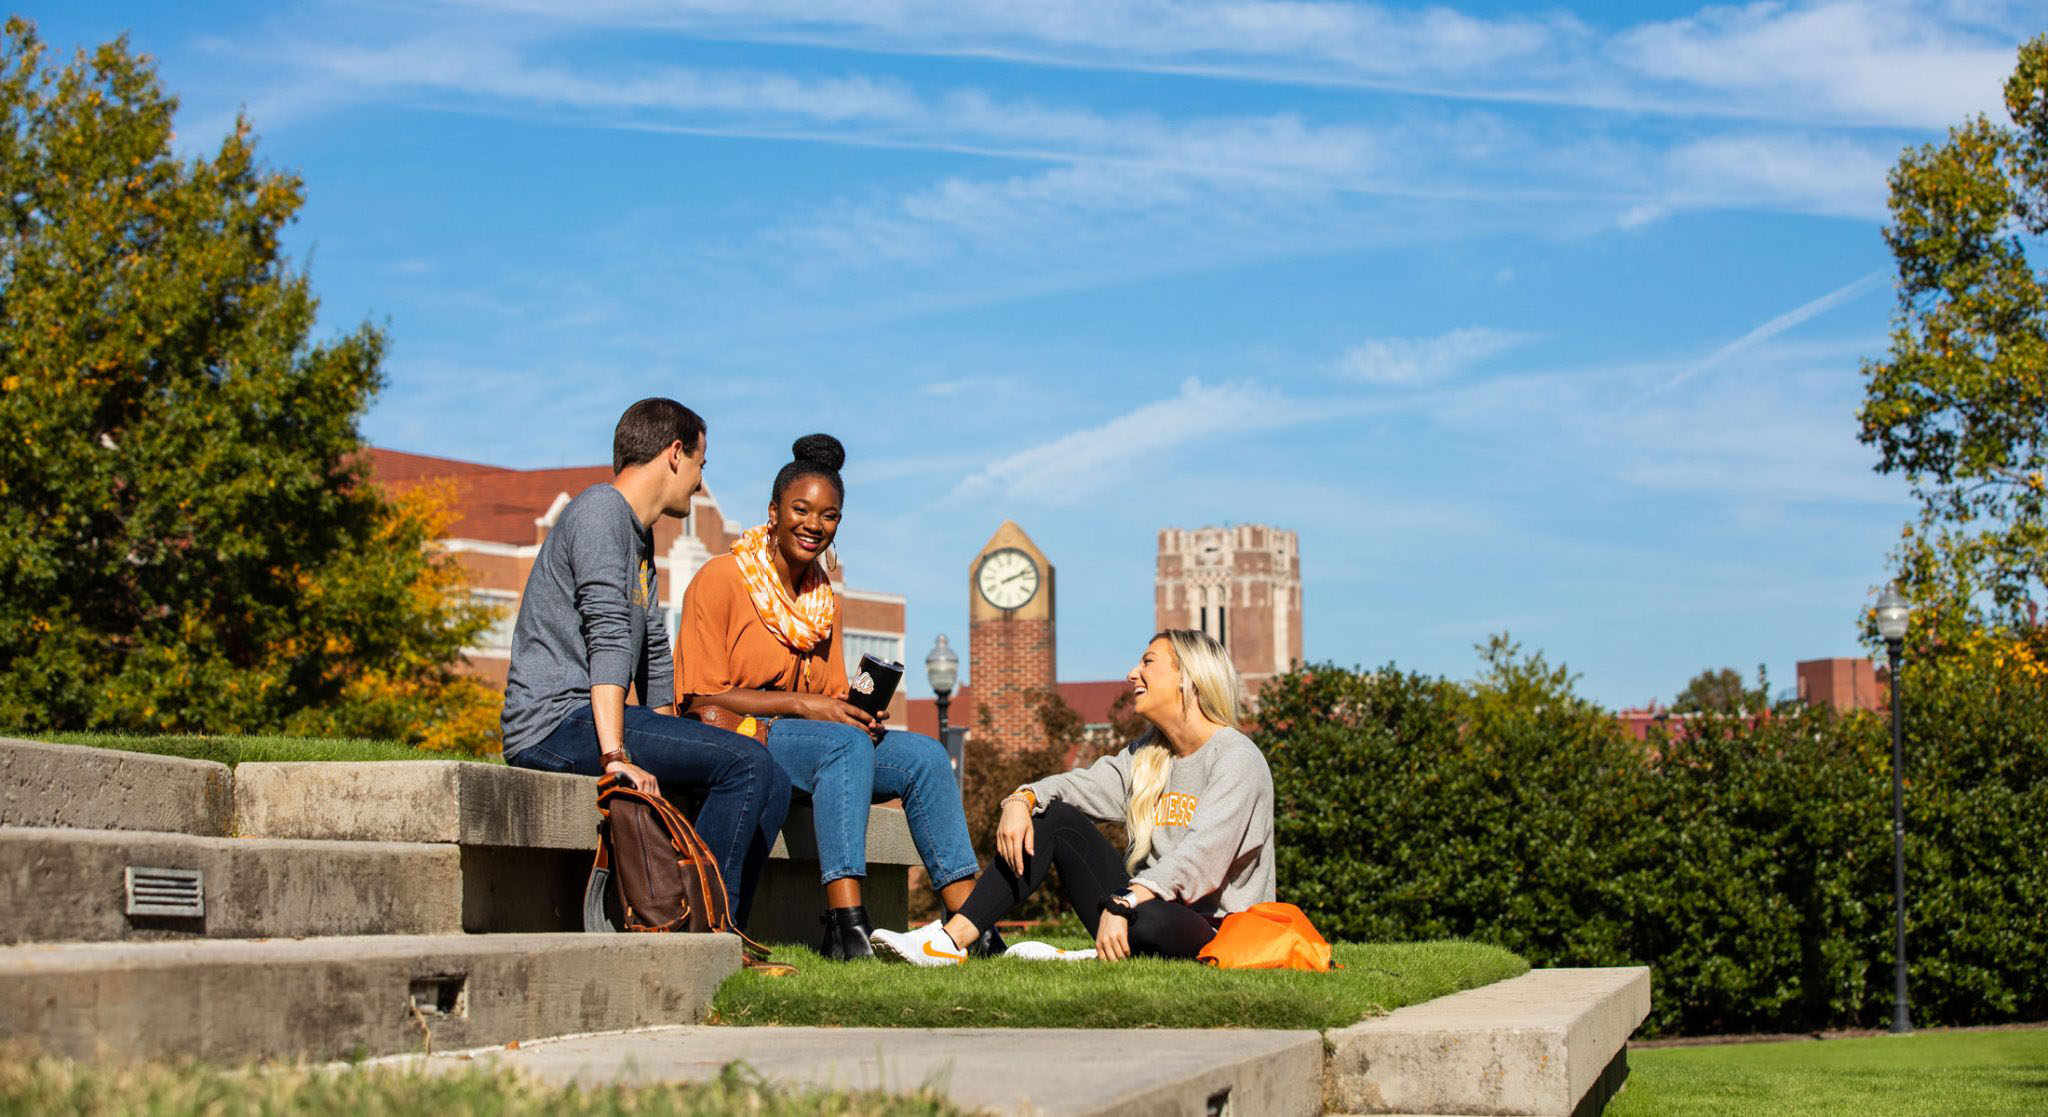 Students enjoying sunshine on campus